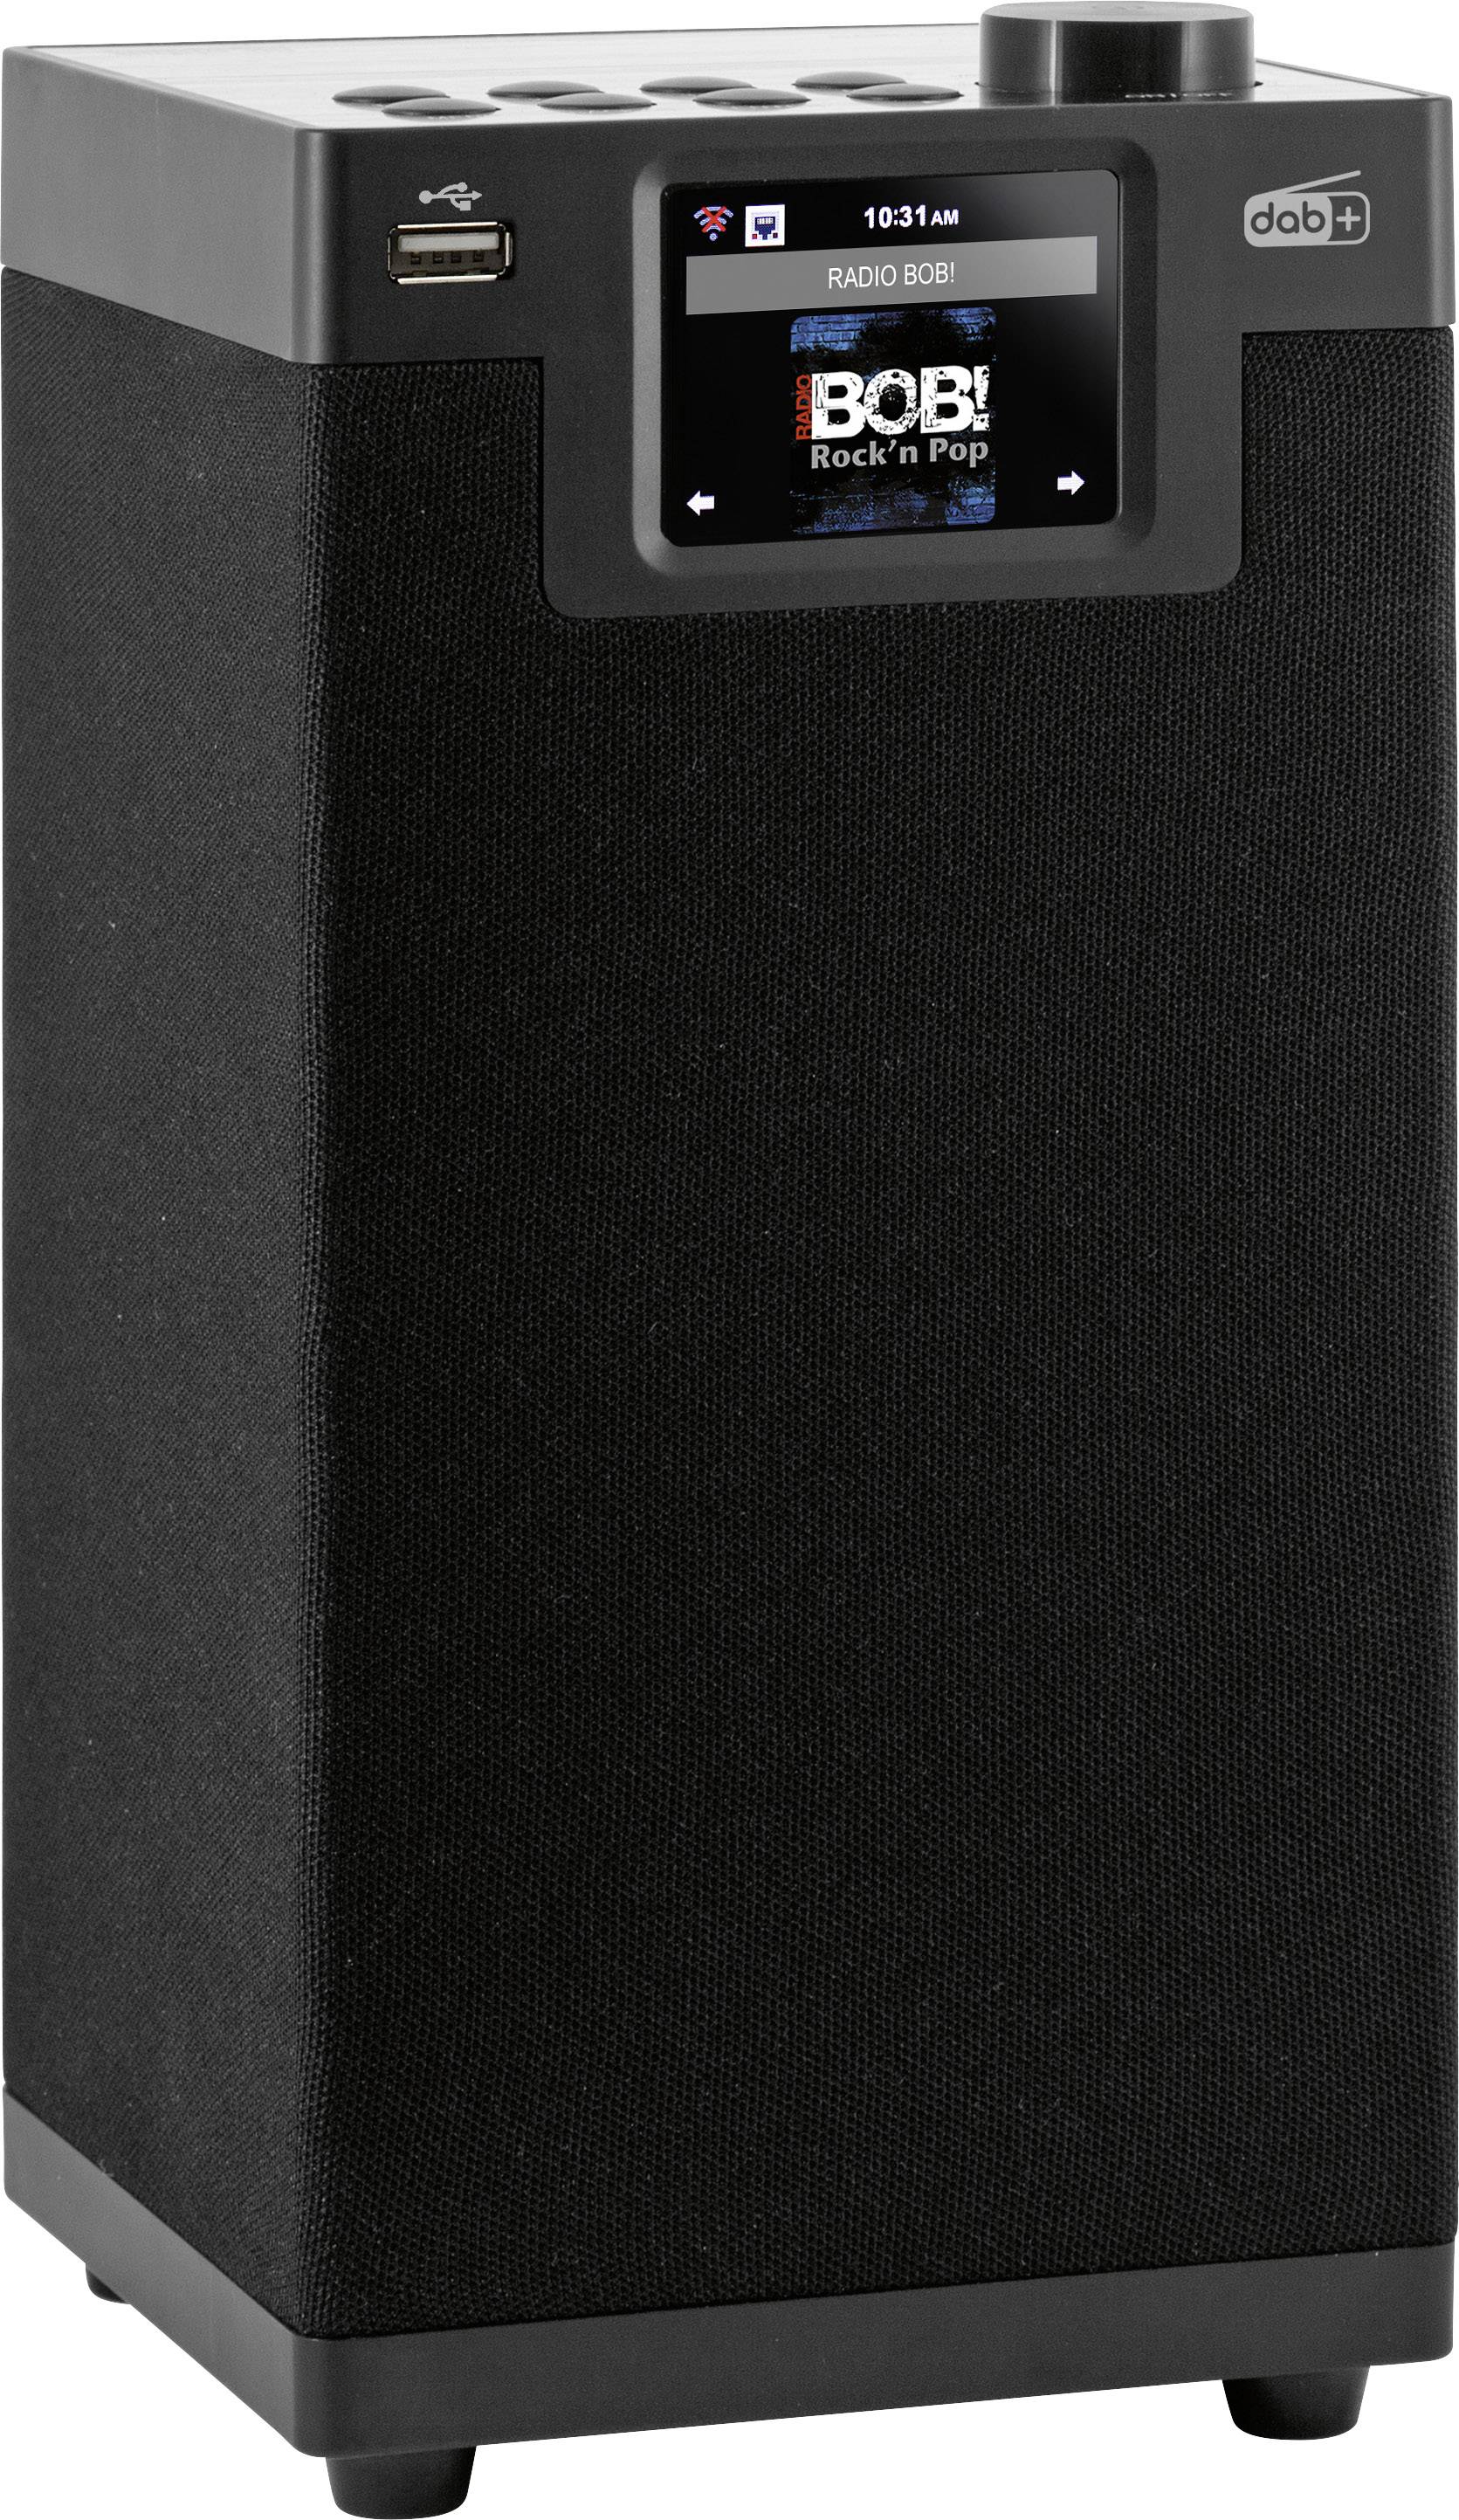 IMPERIAL DABMAN i610 (schwarz)